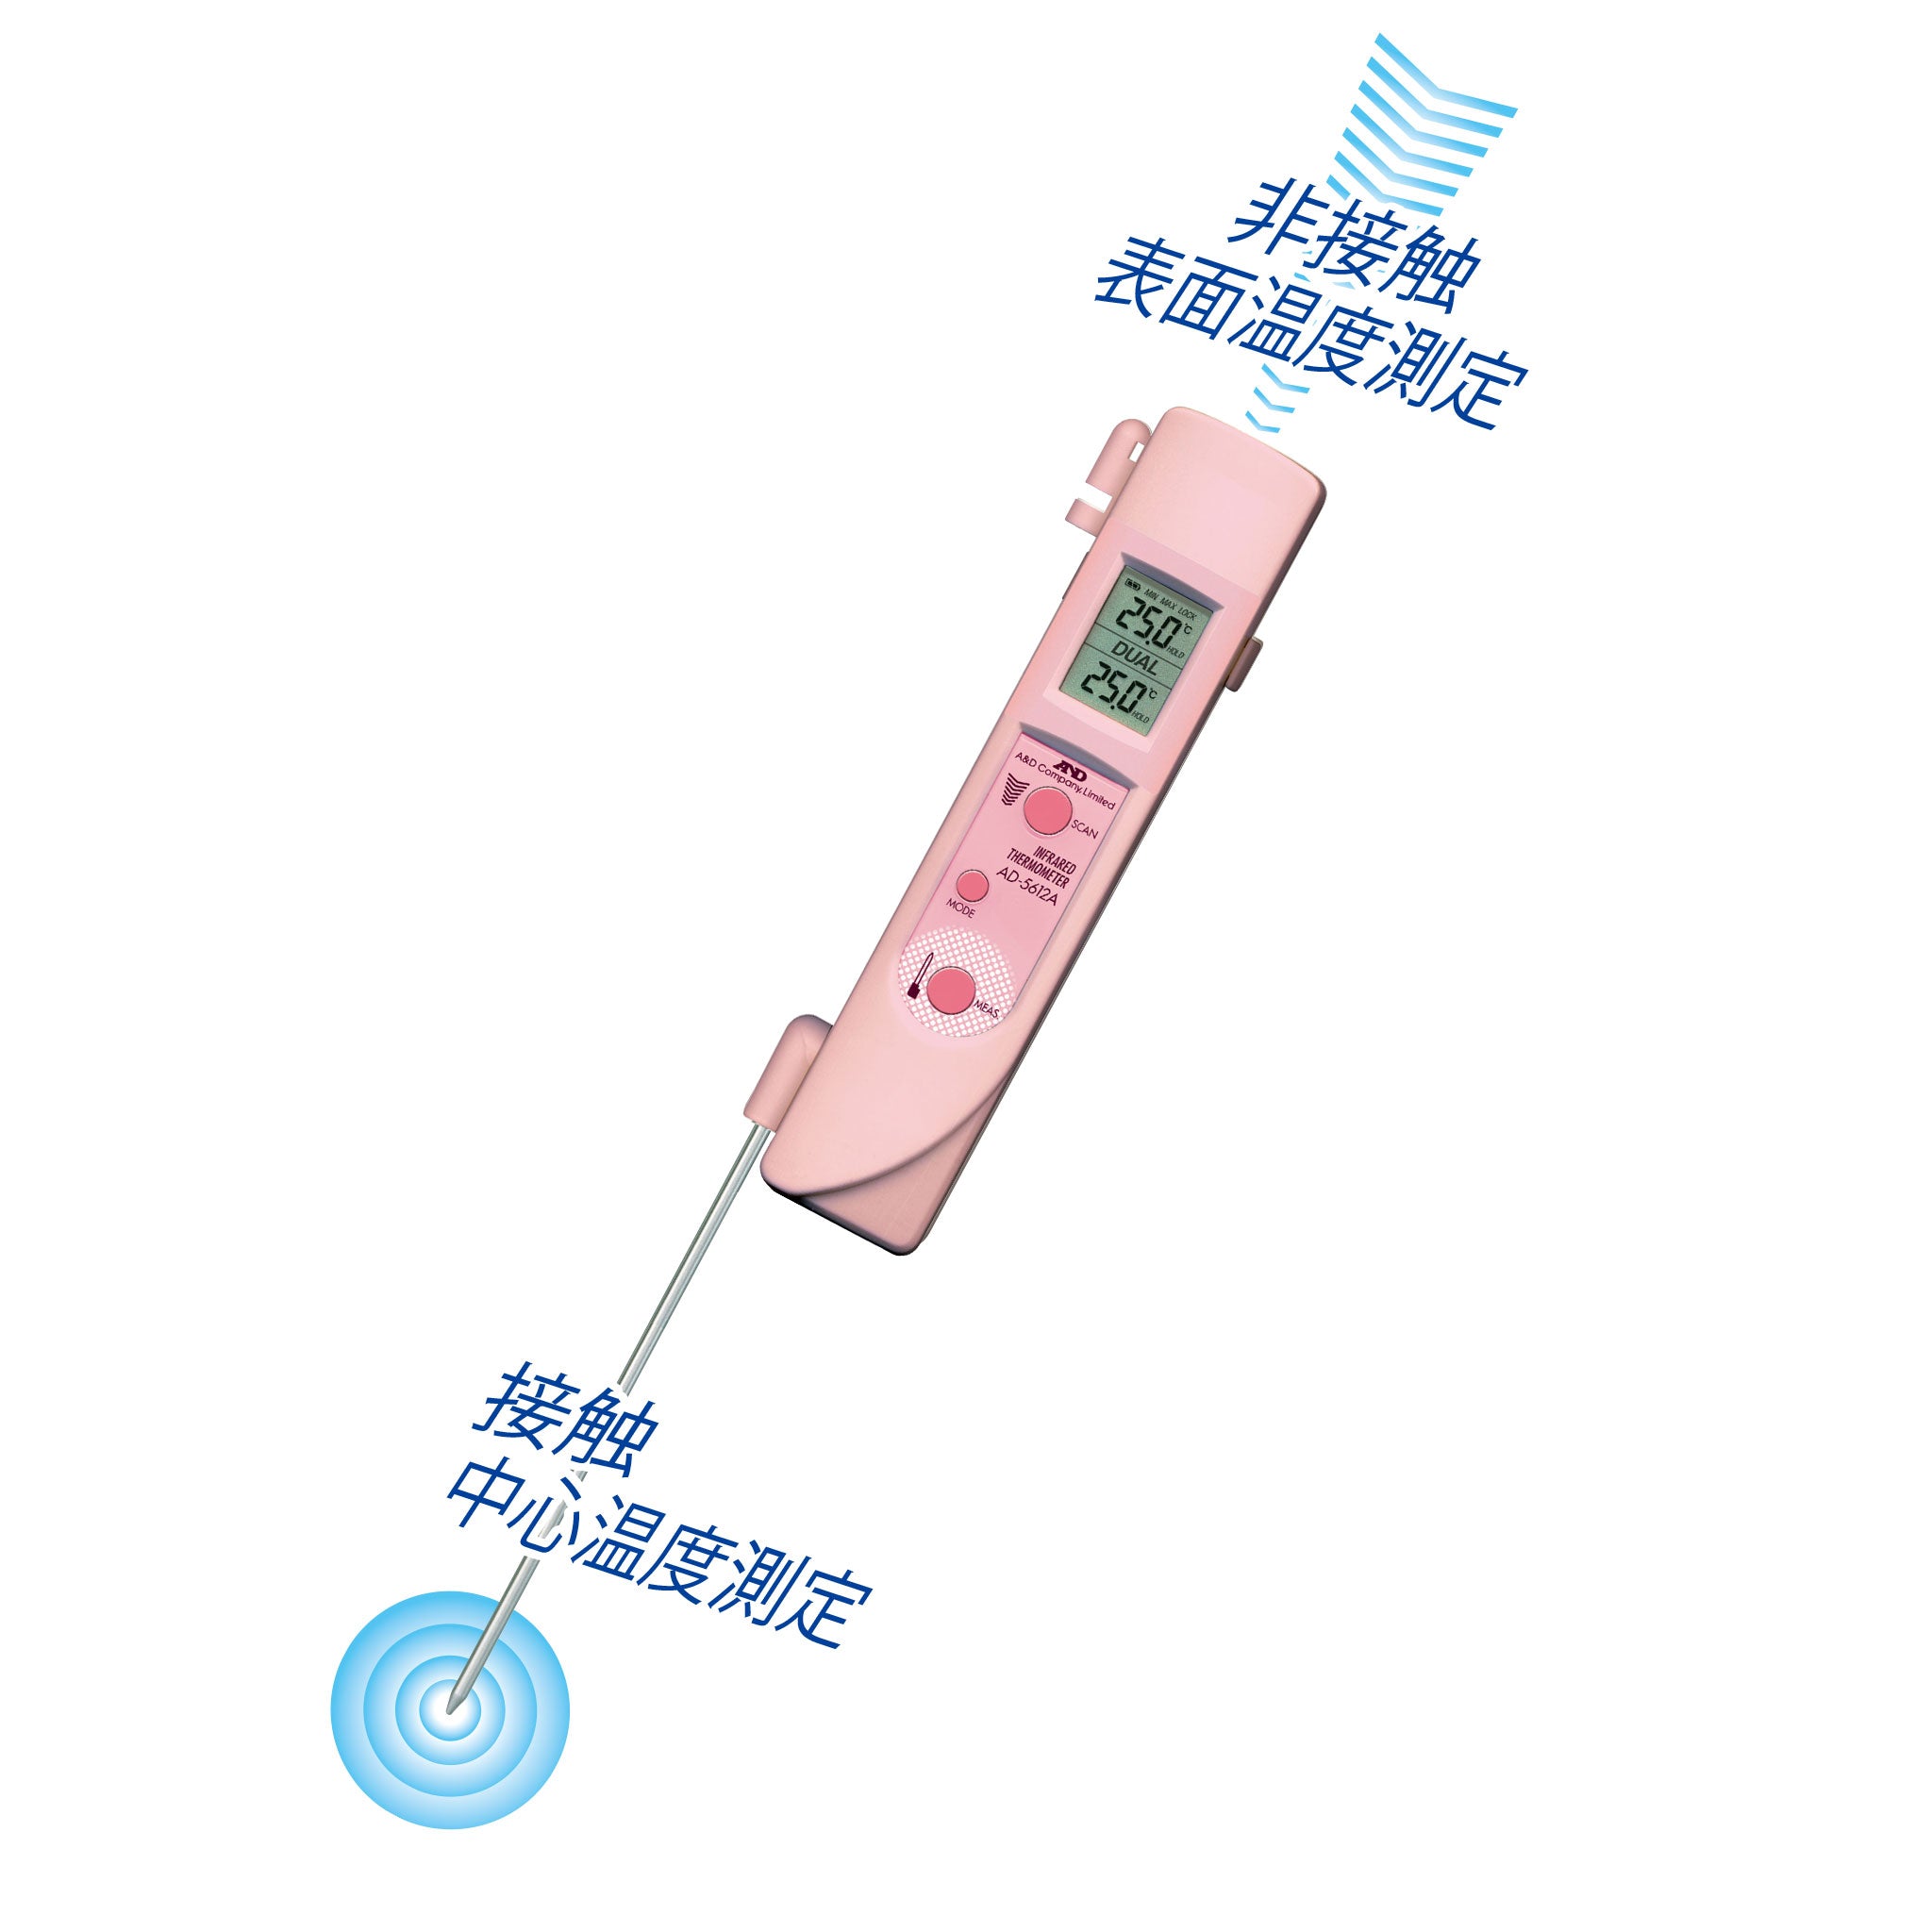 中心温度センサー付き赤外線放射温度計 AD-5612APN